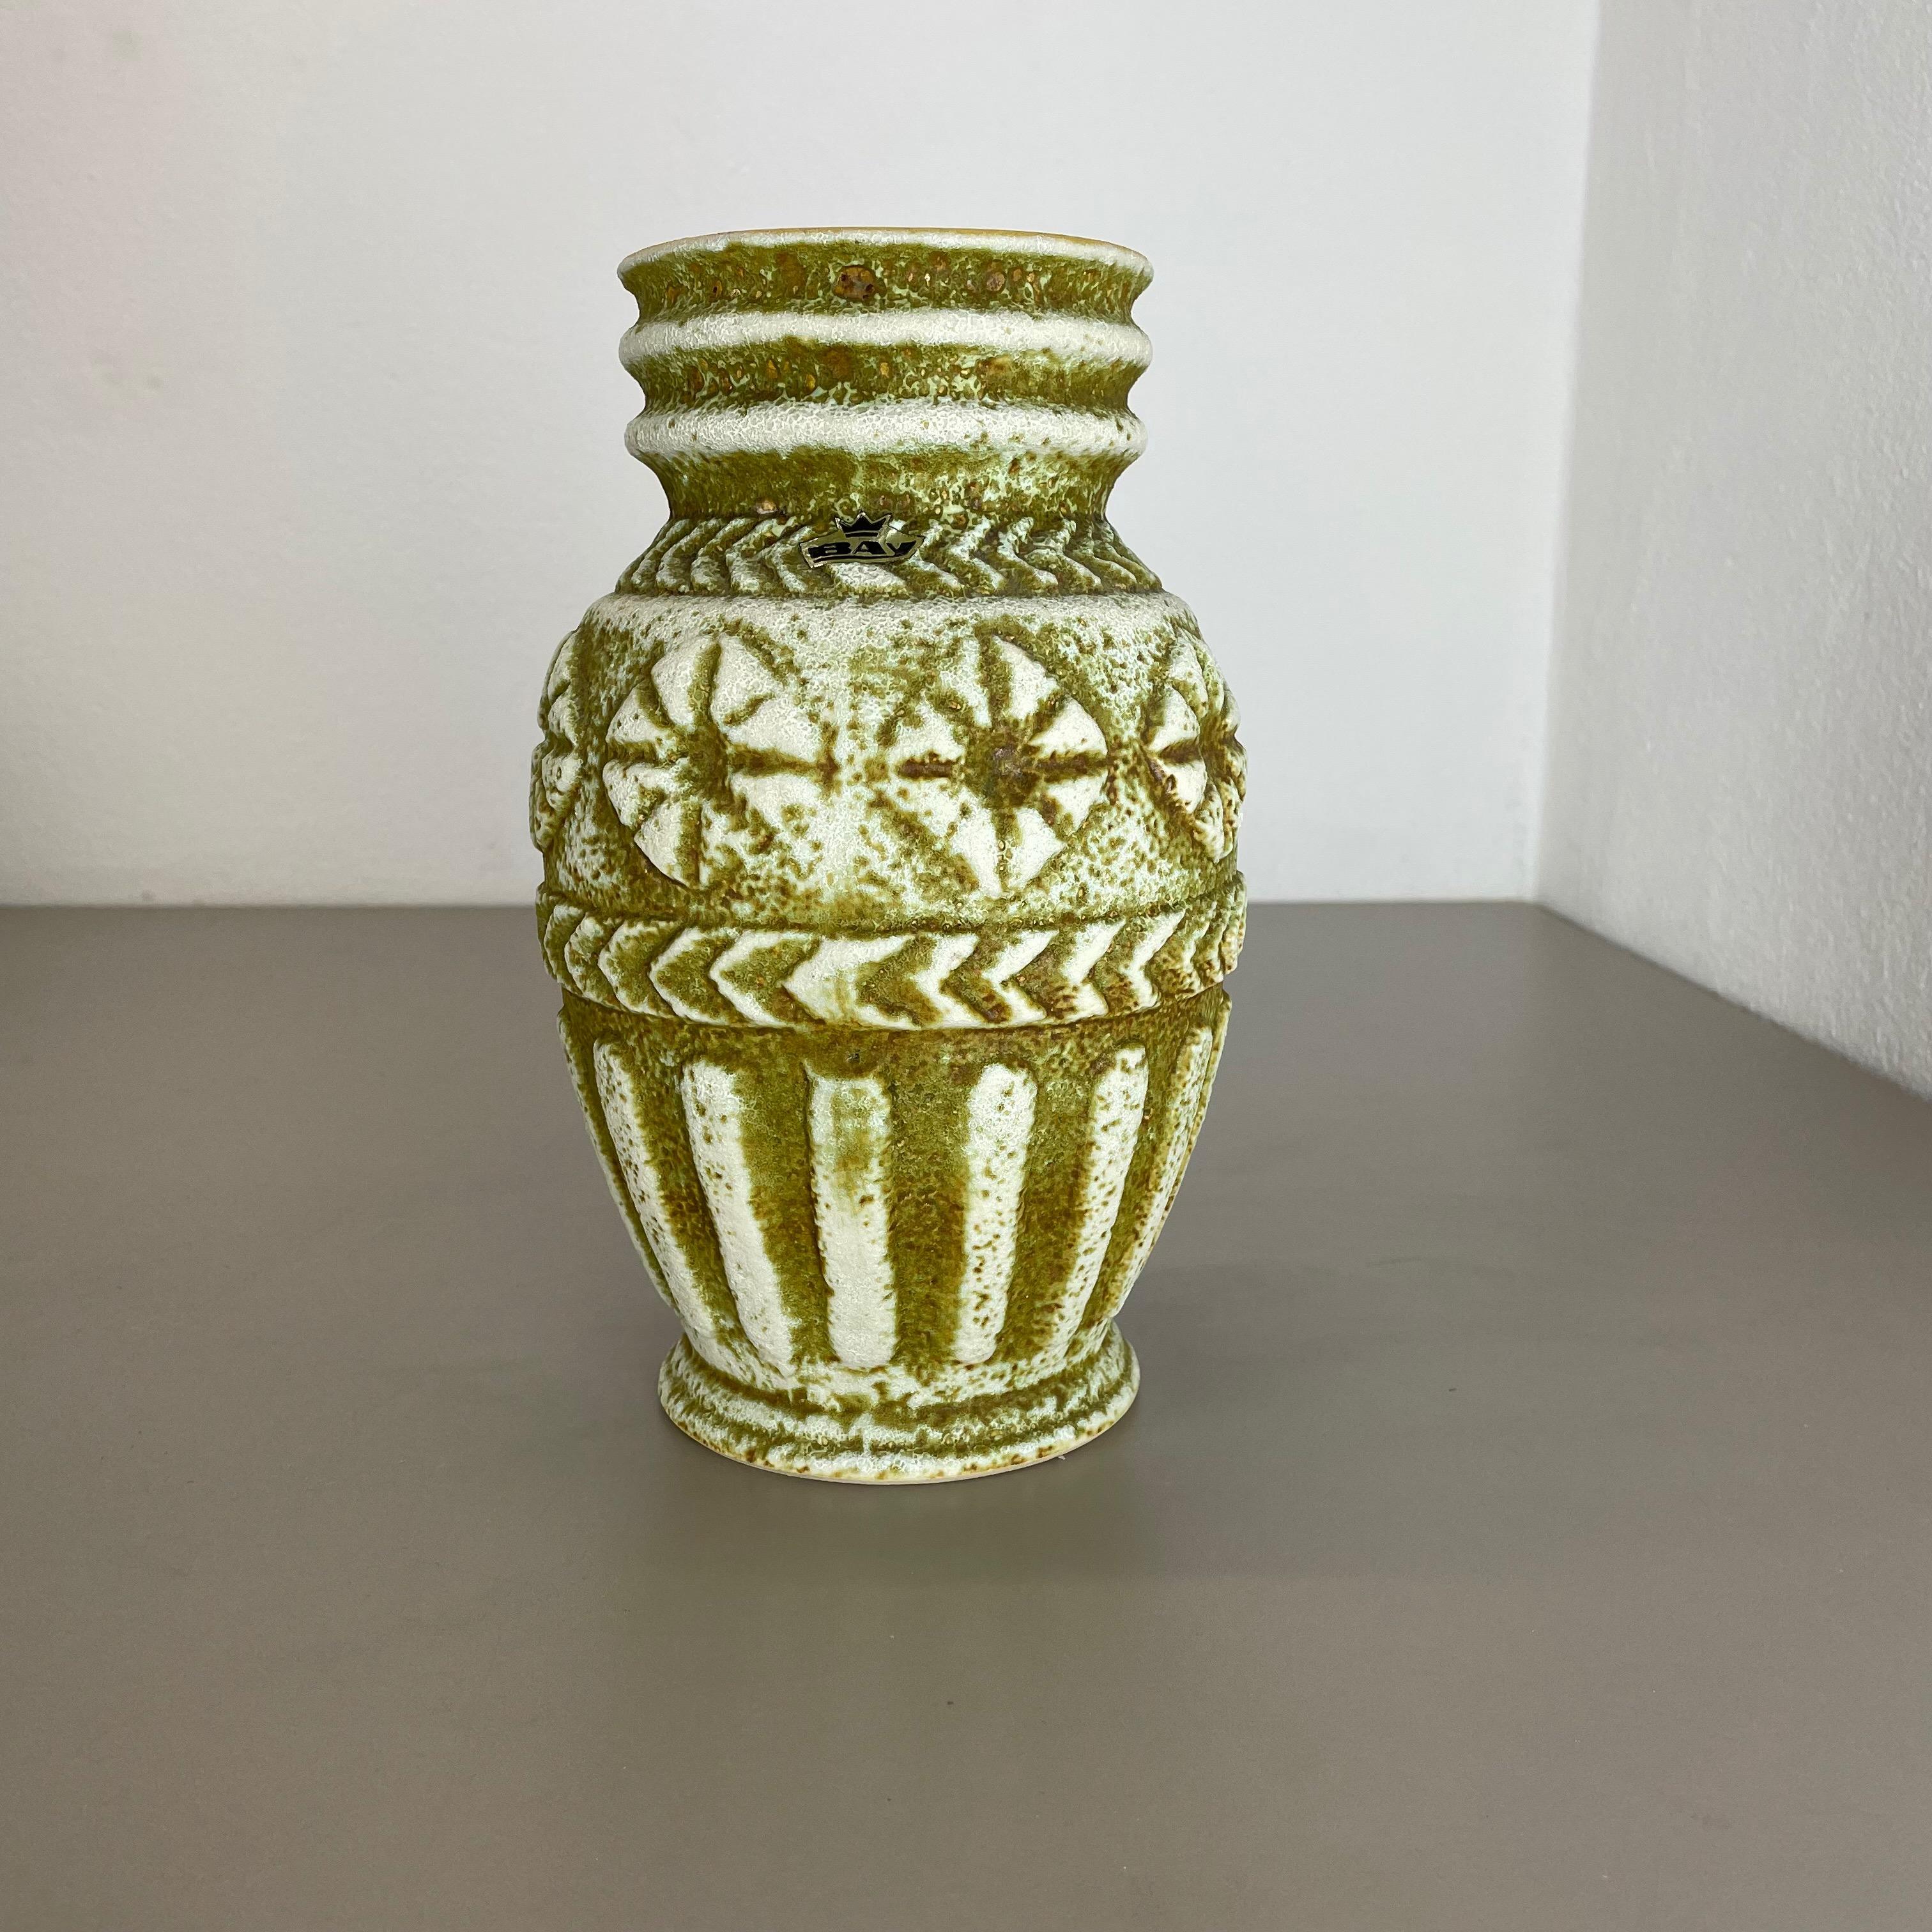 Article :

Vase en céramique


Producteur :

BAY Ceramic, Allemagne



Décennie :

1970s



Description :

Vase original en céramique des années 1970, fabriqué en Allemagne. Production allemande de haute qualité avec une belle